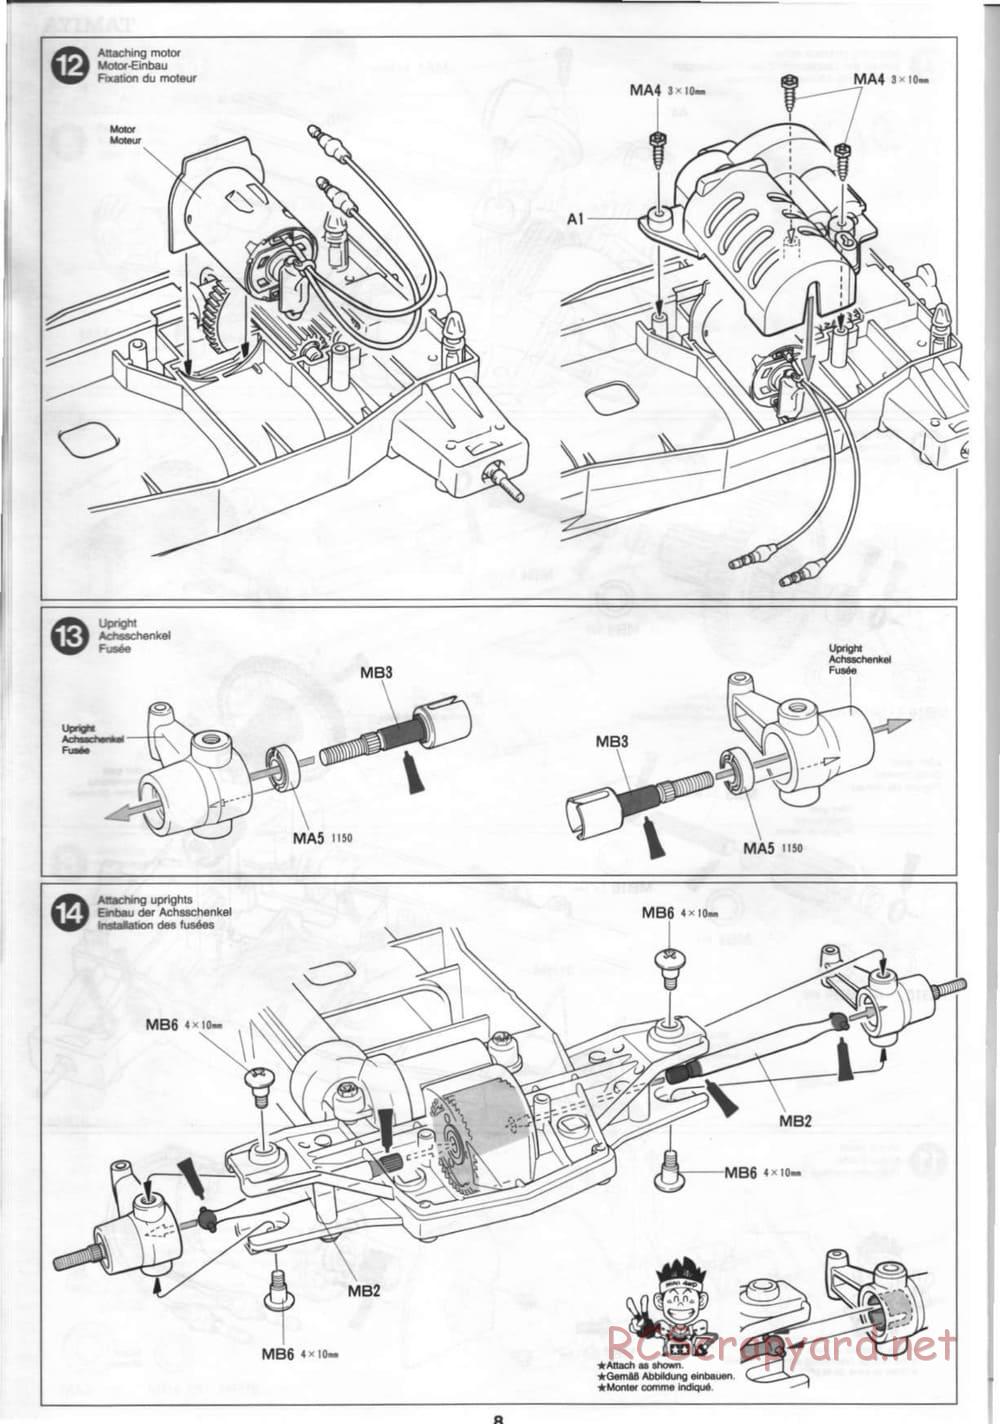 Tamiya - Thunder Blitz - Boy's 4WD Chassis - Manual - Page 8